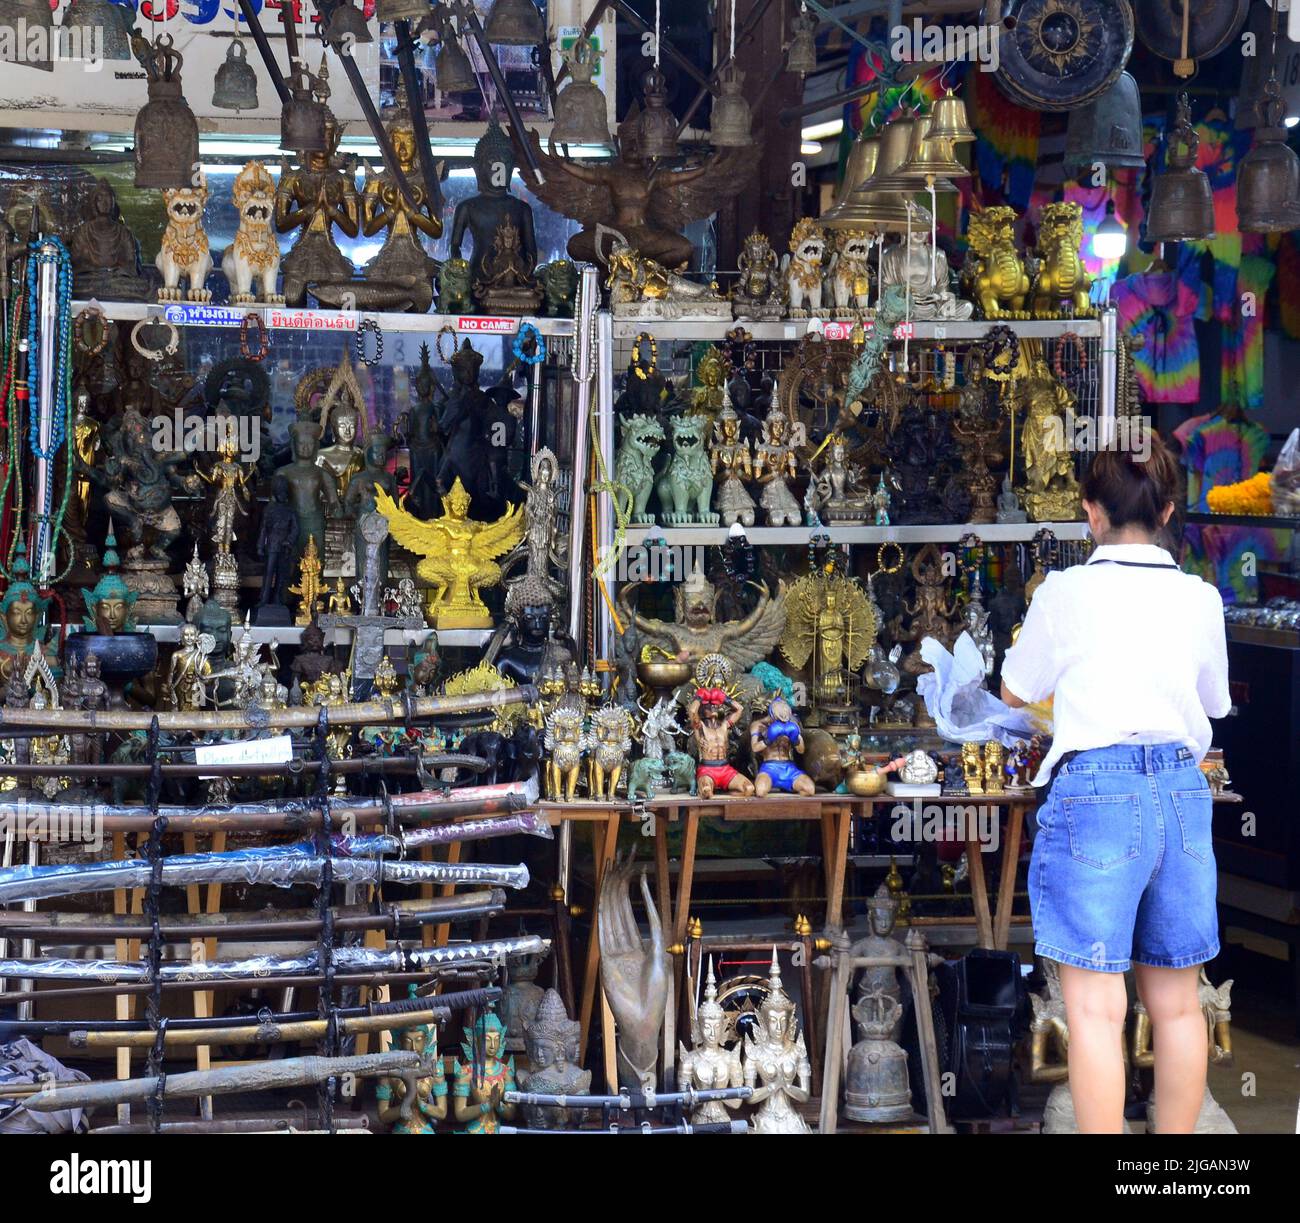 Un membre du personnel ajuste les antiquités pour les vendre dans un stand au marché du week-end de Chatuchak, Bangkok, Thaïlande, Asie. Le marché est le plus grand marché de Thaïlande. Banque D'Images